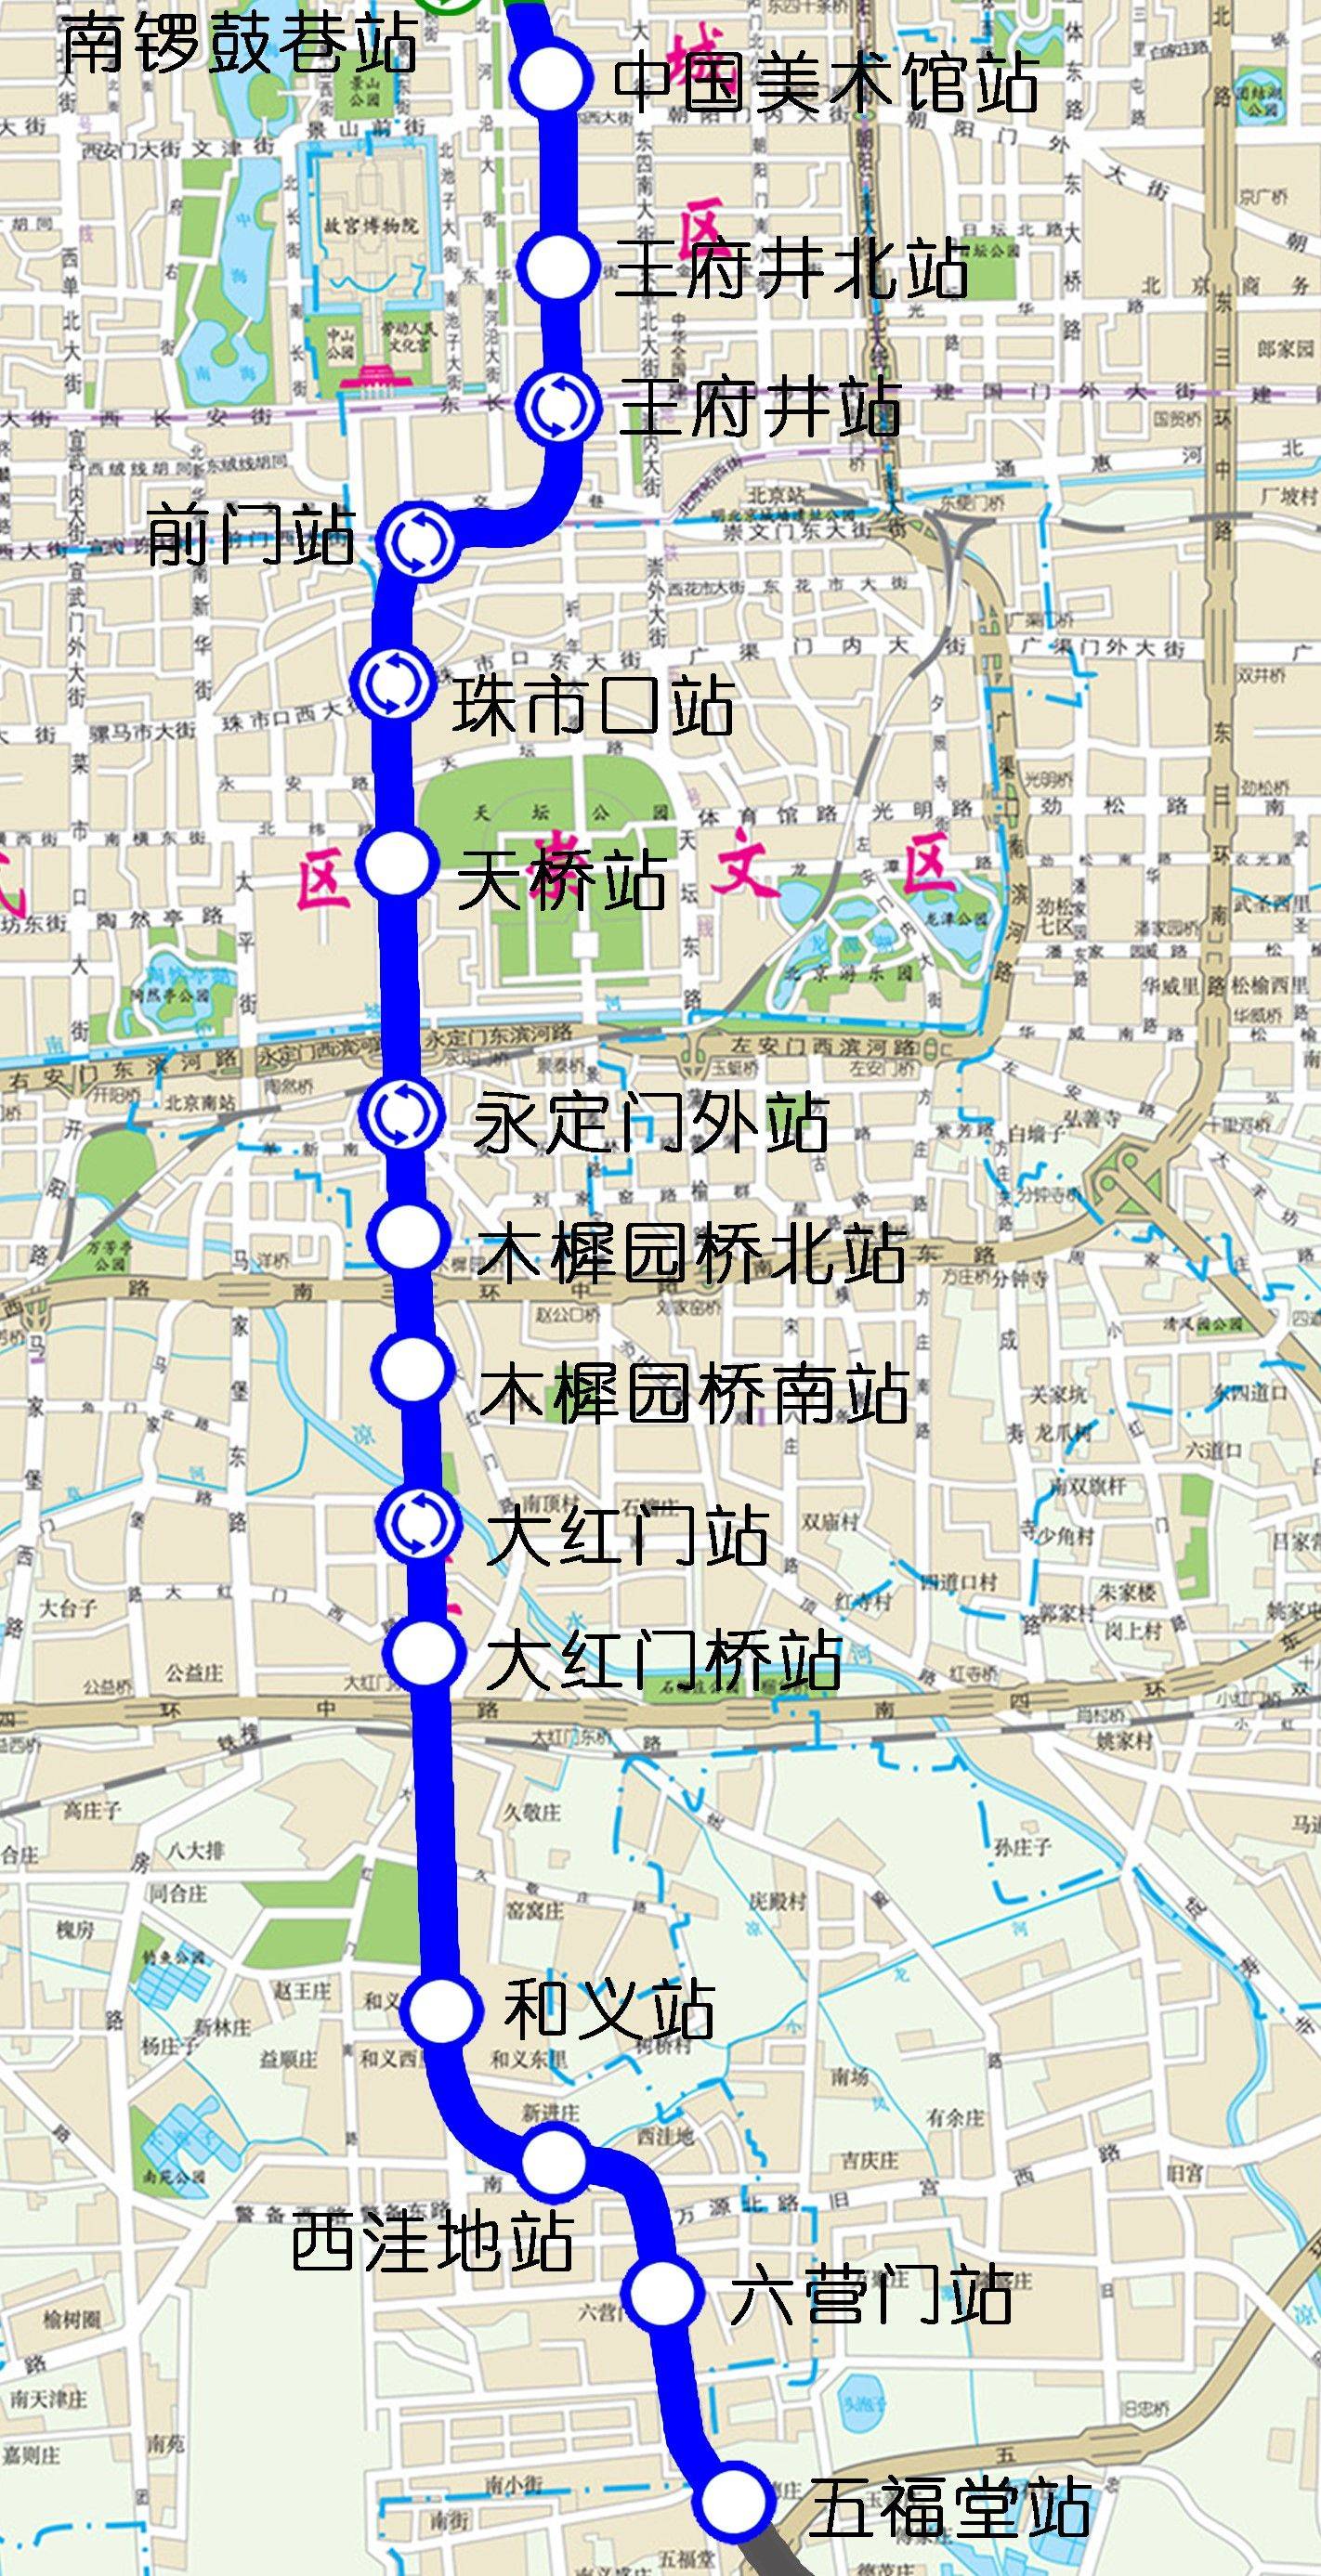 今年北京将新开通7条(段)地铁,快看经过你家吗?